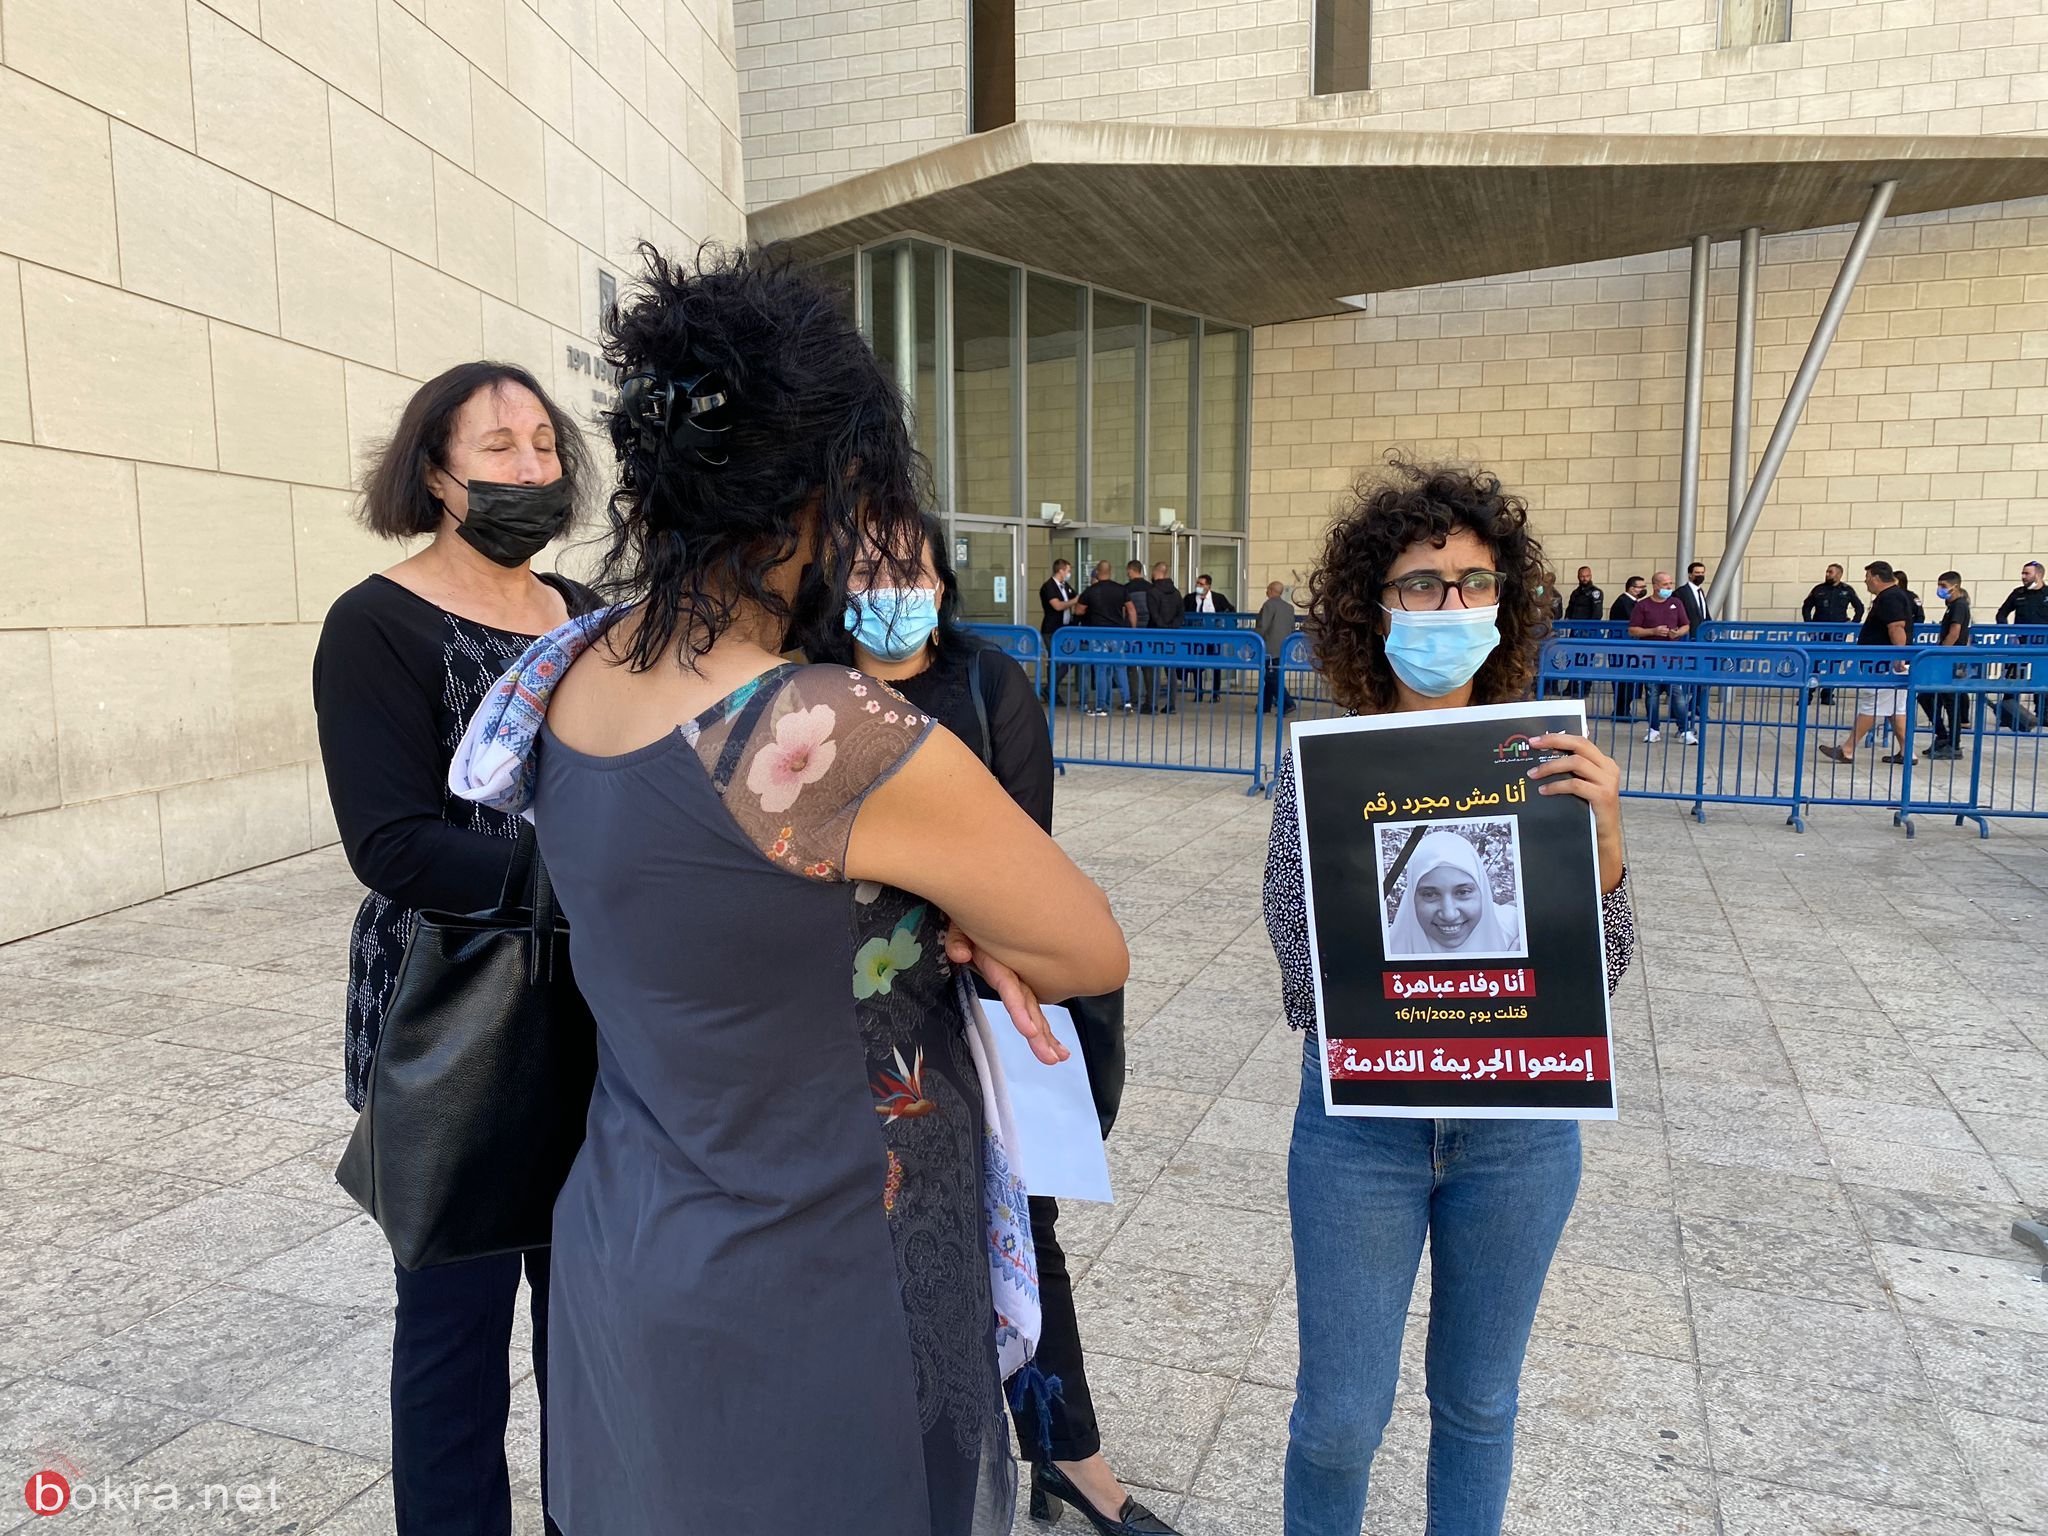 بنات المغدورة وفاء عباهرة وعشرات الناشطين يتظاهرون أمام المحكمة في ذكرى مقتلها-6